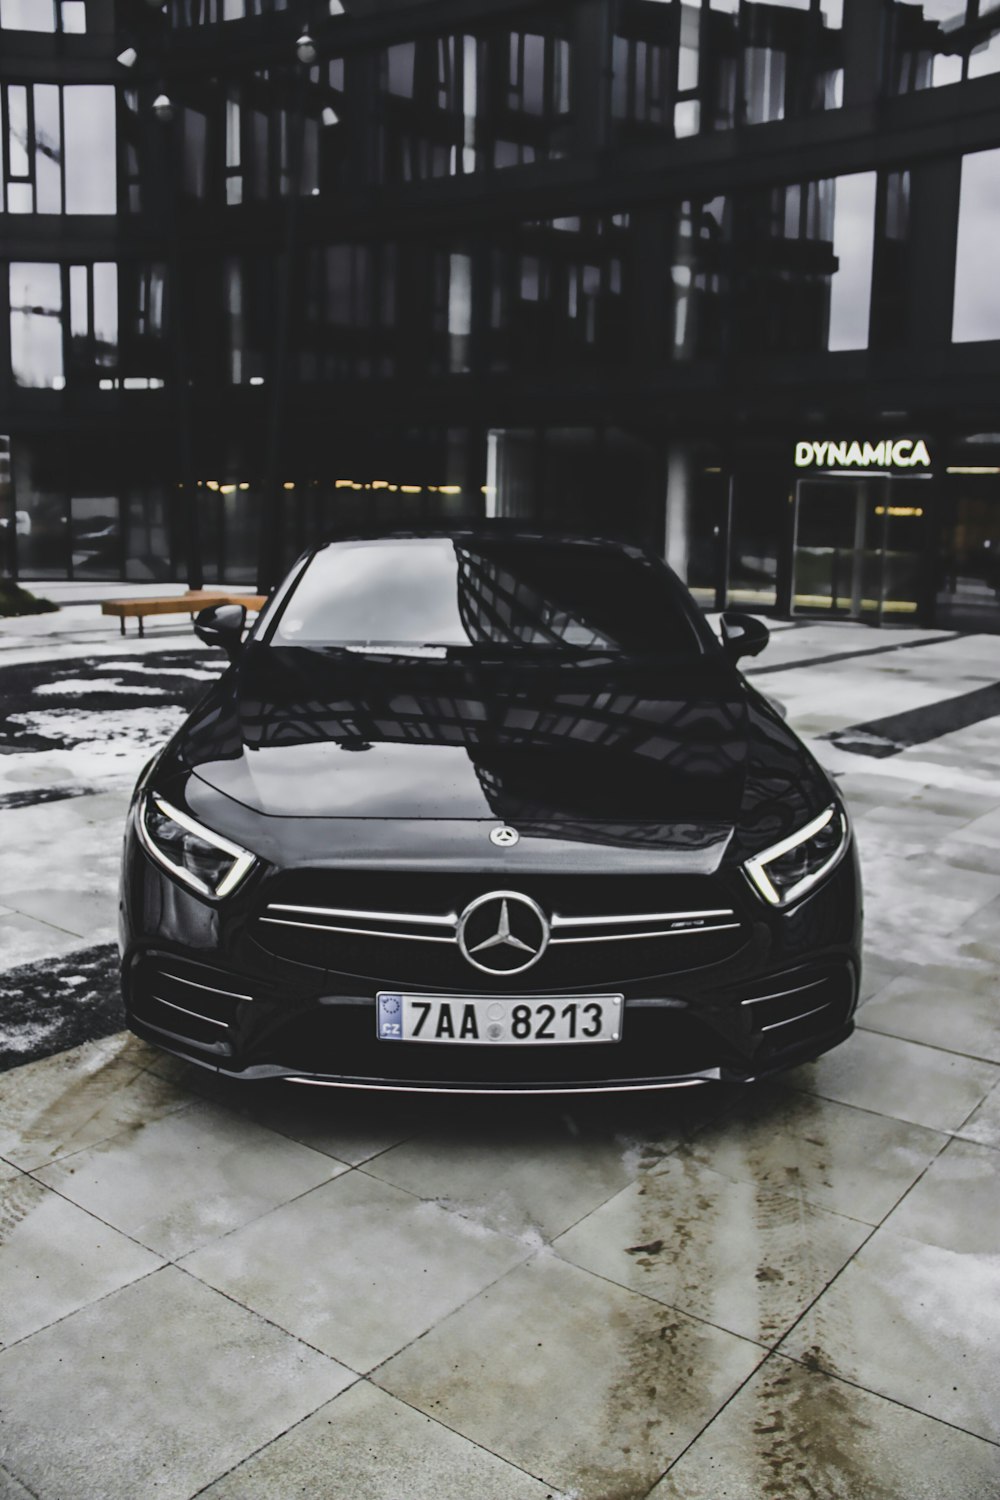 Veicolo Mercedes-Benz nero parcheggiato fuori dall'edificio Dynamica